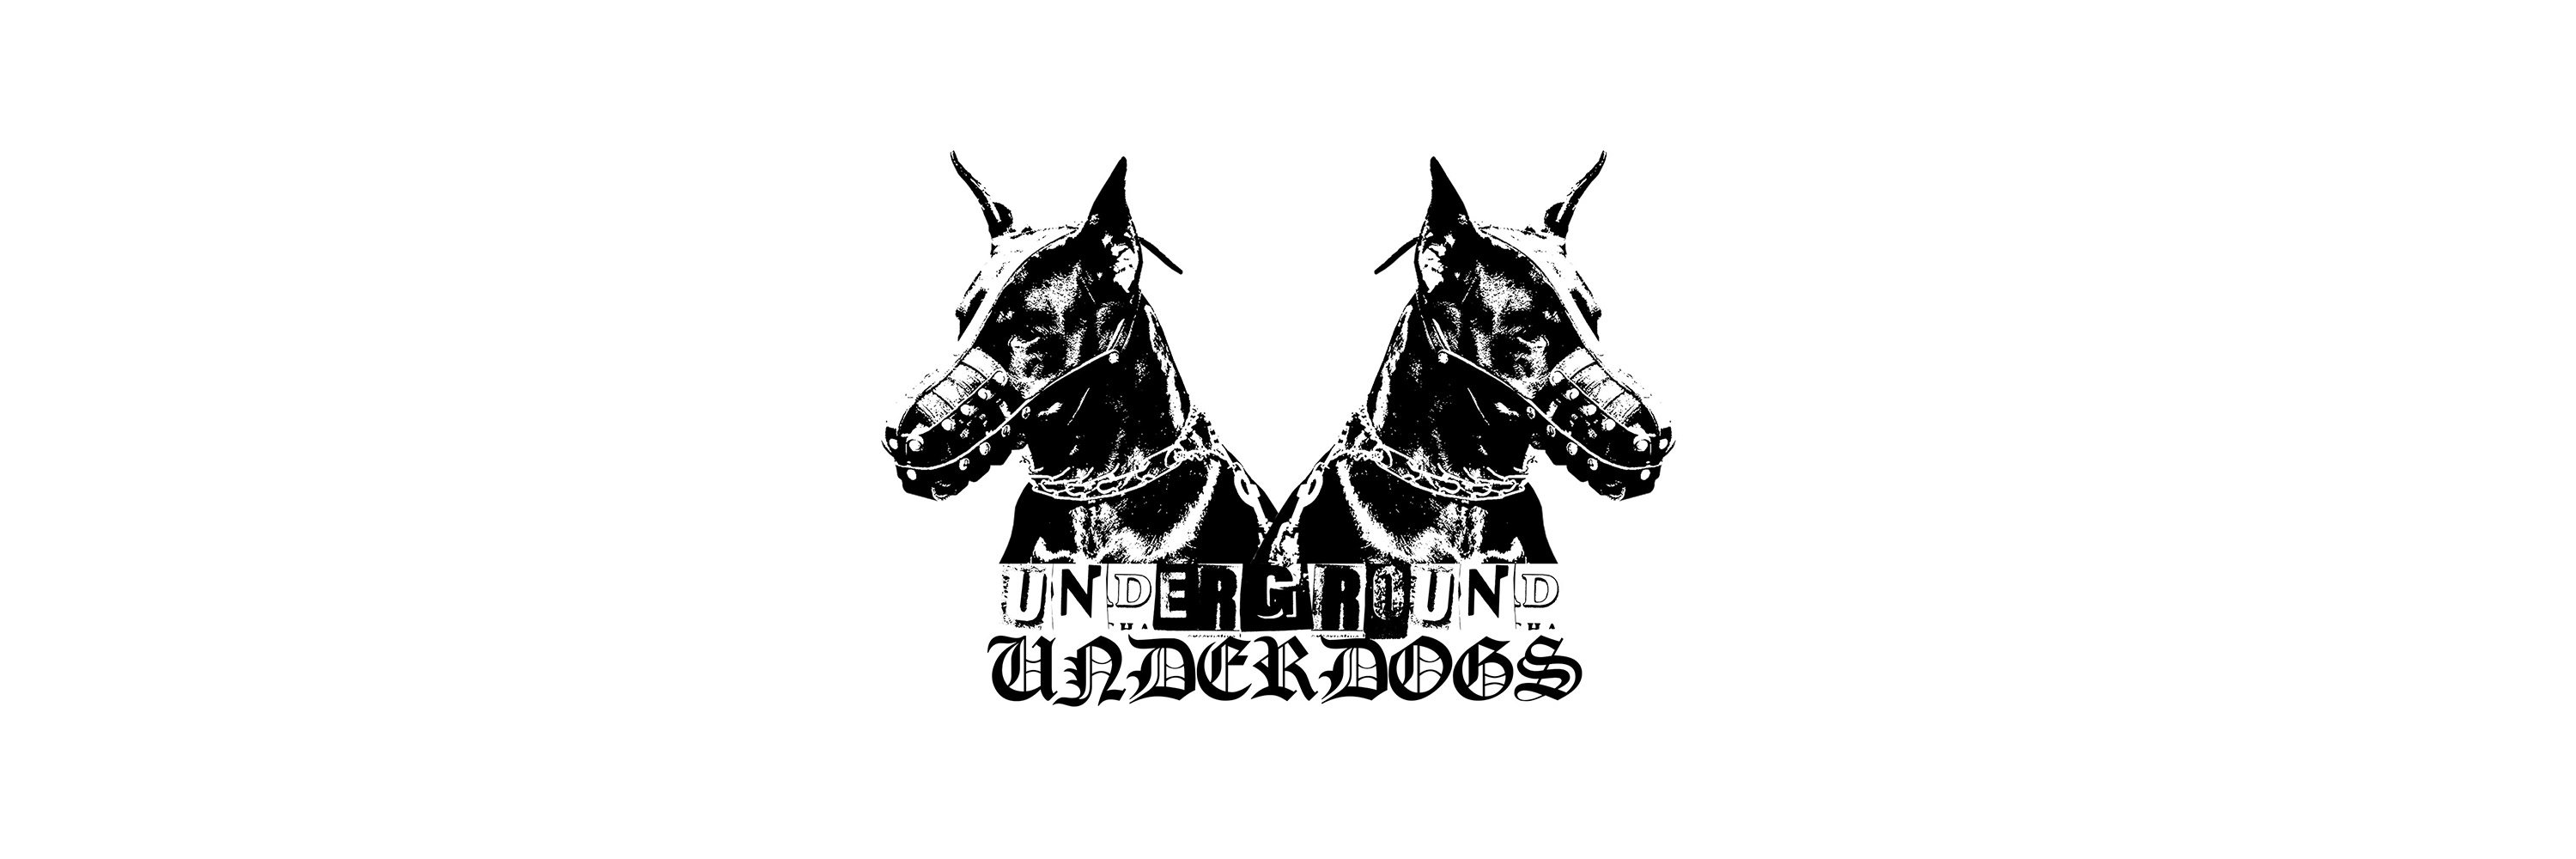 Underground Underdogs logo